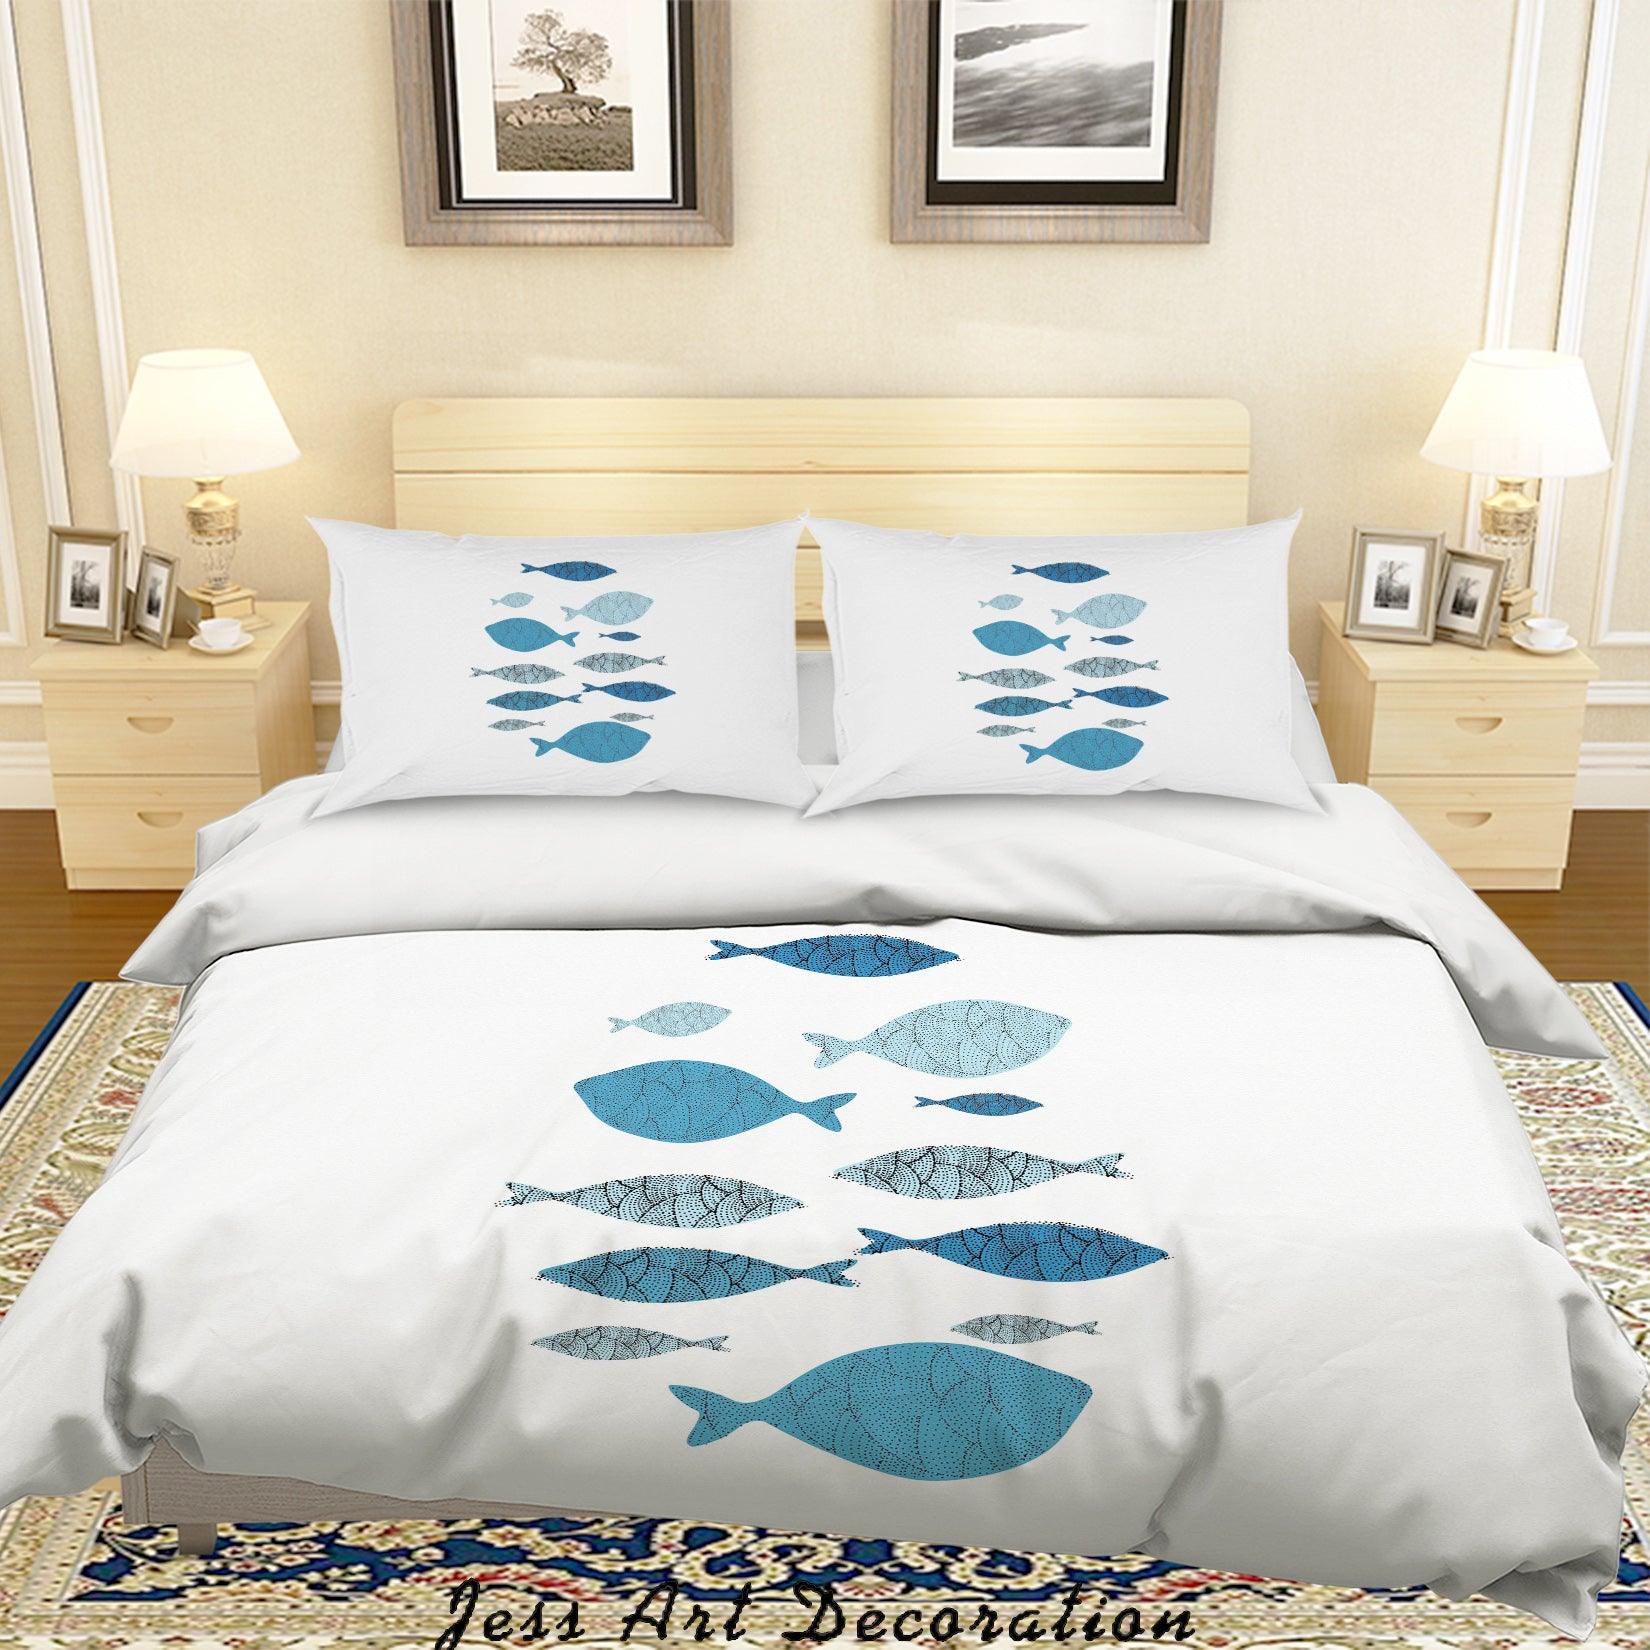 3D White Fish Quilt Cover Set Bedding Set Pillowcases 15- Jess Art Decoration